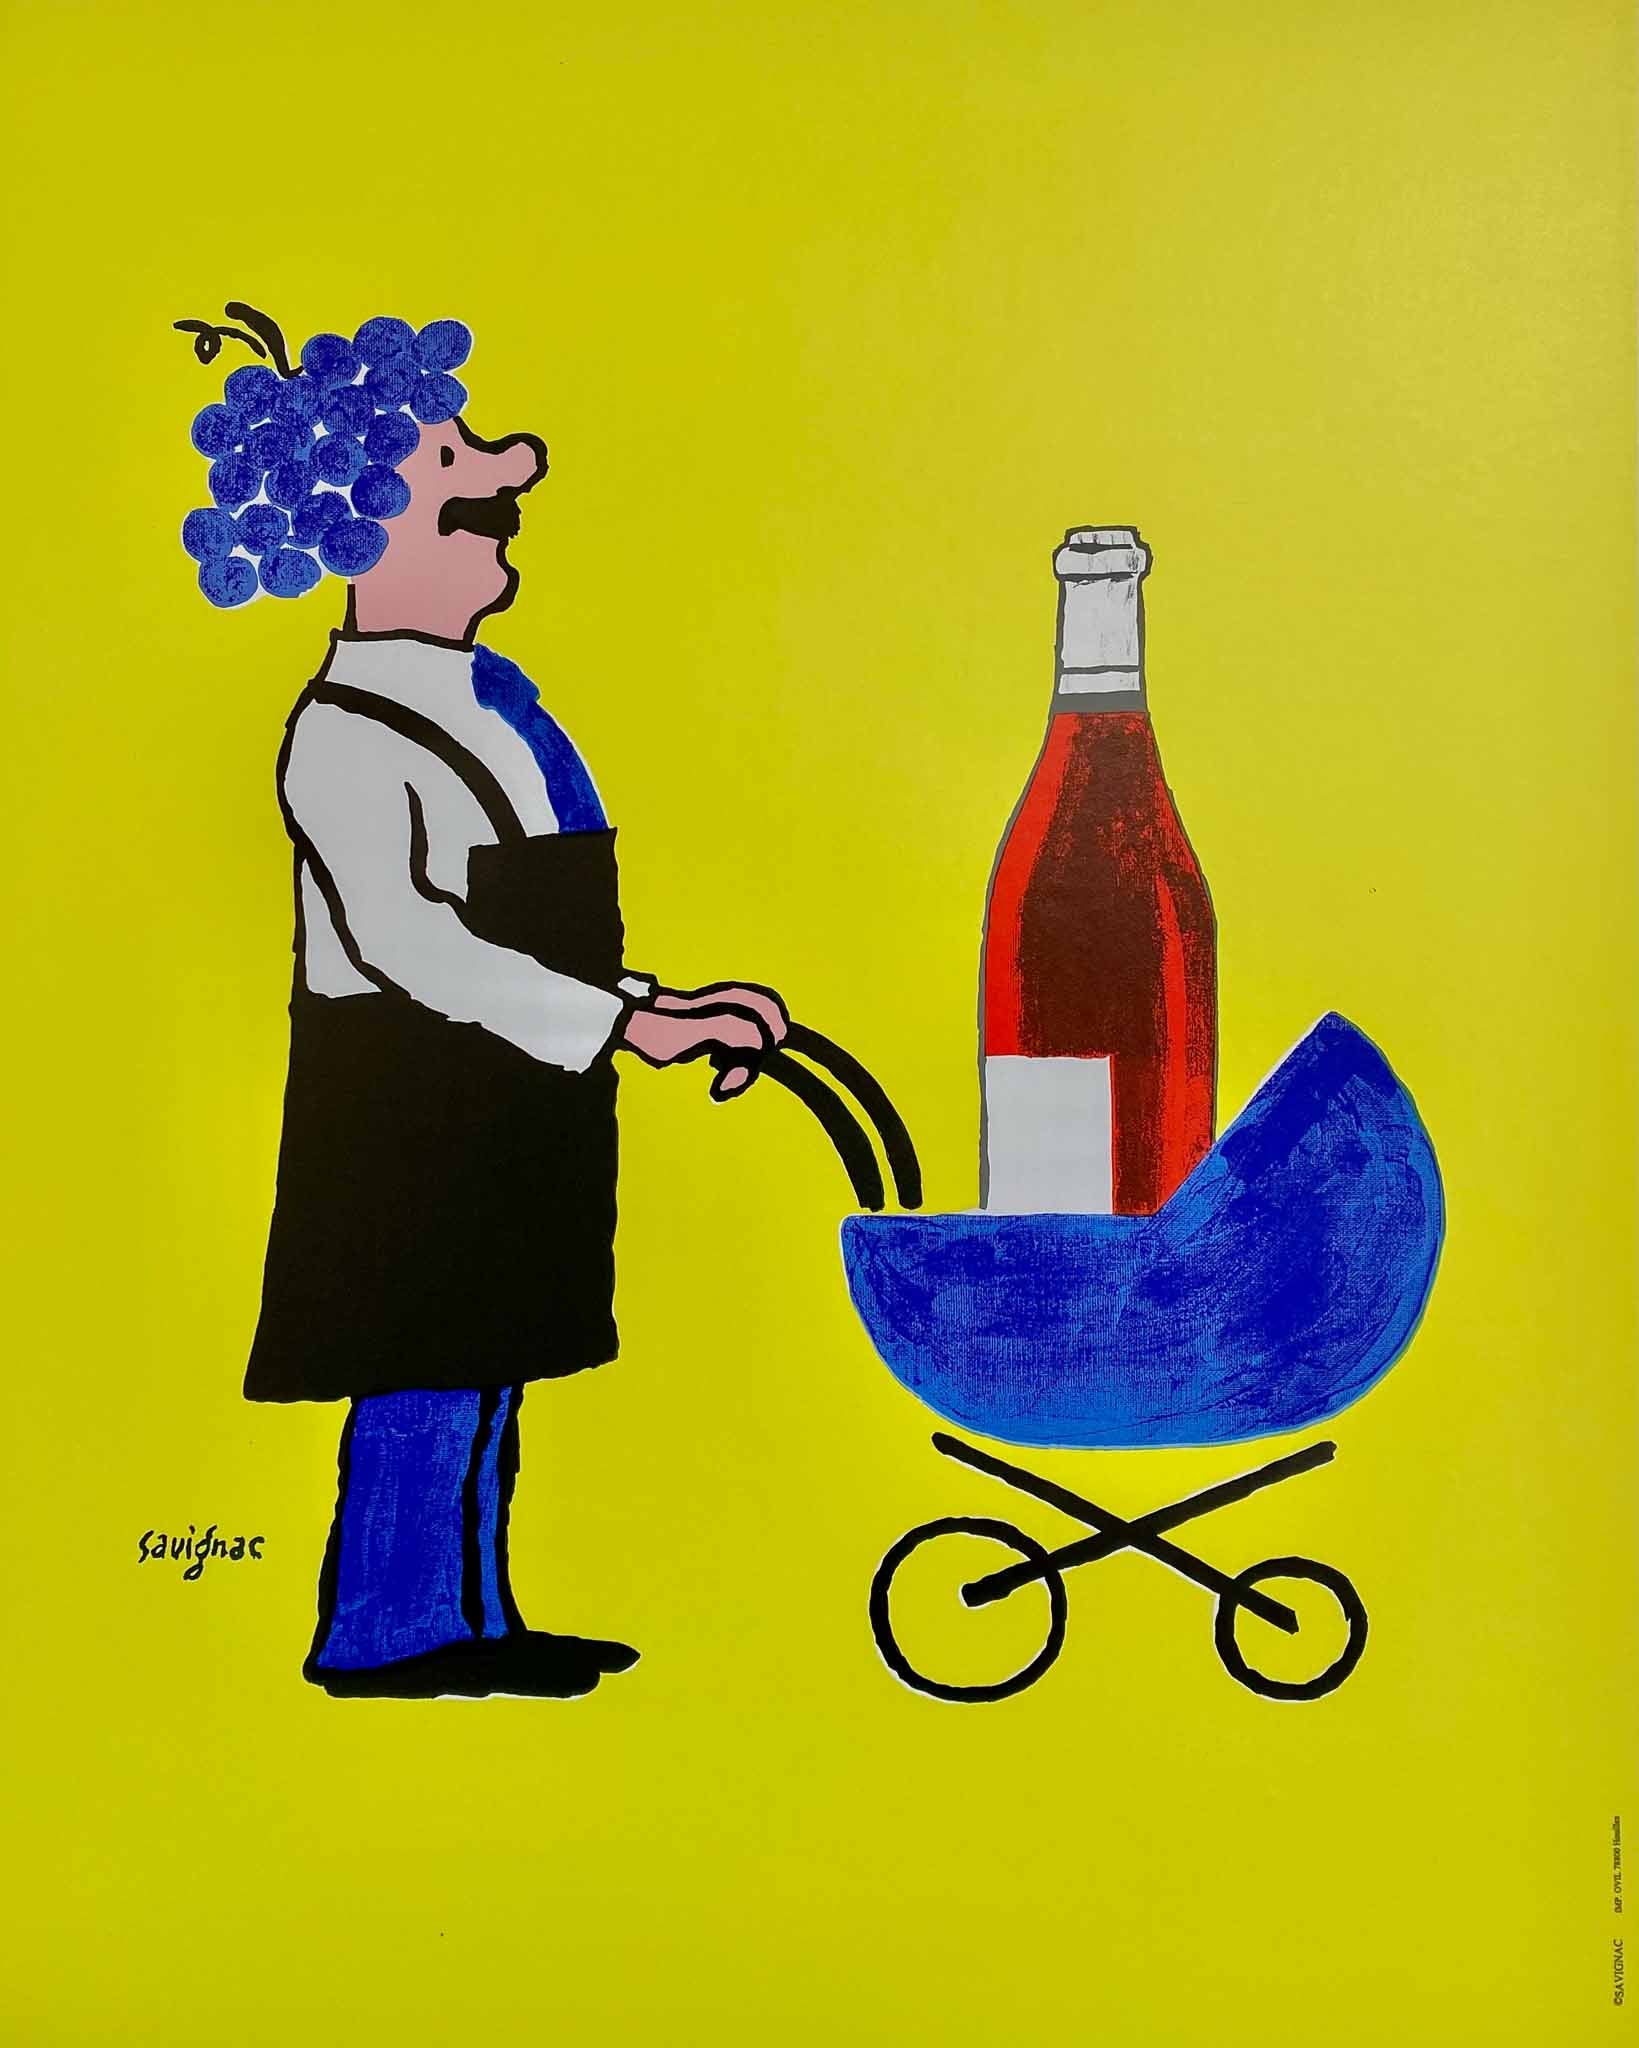 Affiche originale de Raymond Savignac dessinée en 1993 pour célébrer l'arrivée du Beaujolais Nouveau.  Chaque année, le troisième jeudi de novembre marque la sortie du Beaujolais Nouveau,  un vin fait uniquement à partir de raisins Gasmay cueillis à la main dans les vignobles du Beaujolais.